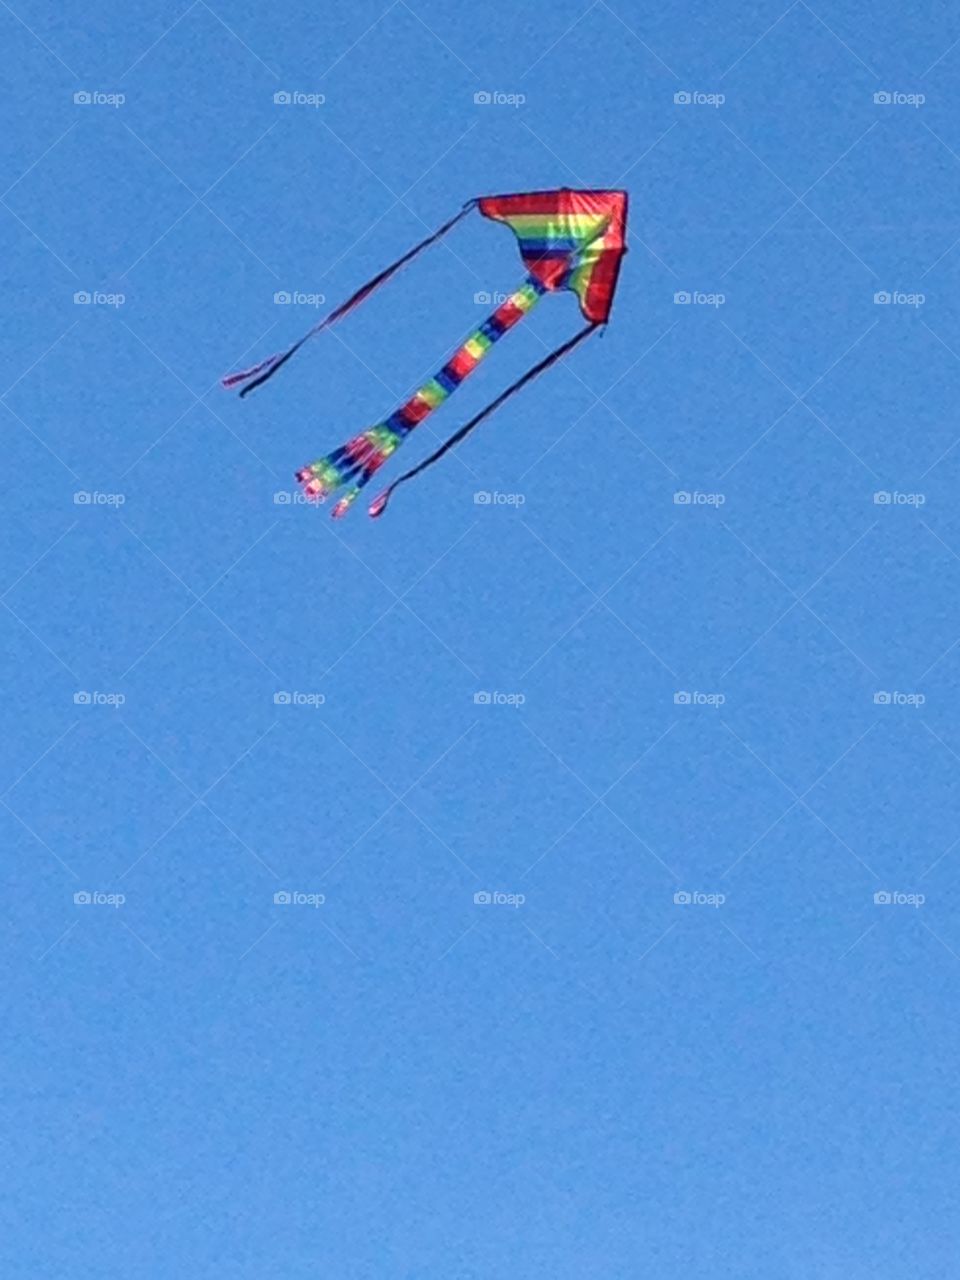 Kite in Sky, Swansea